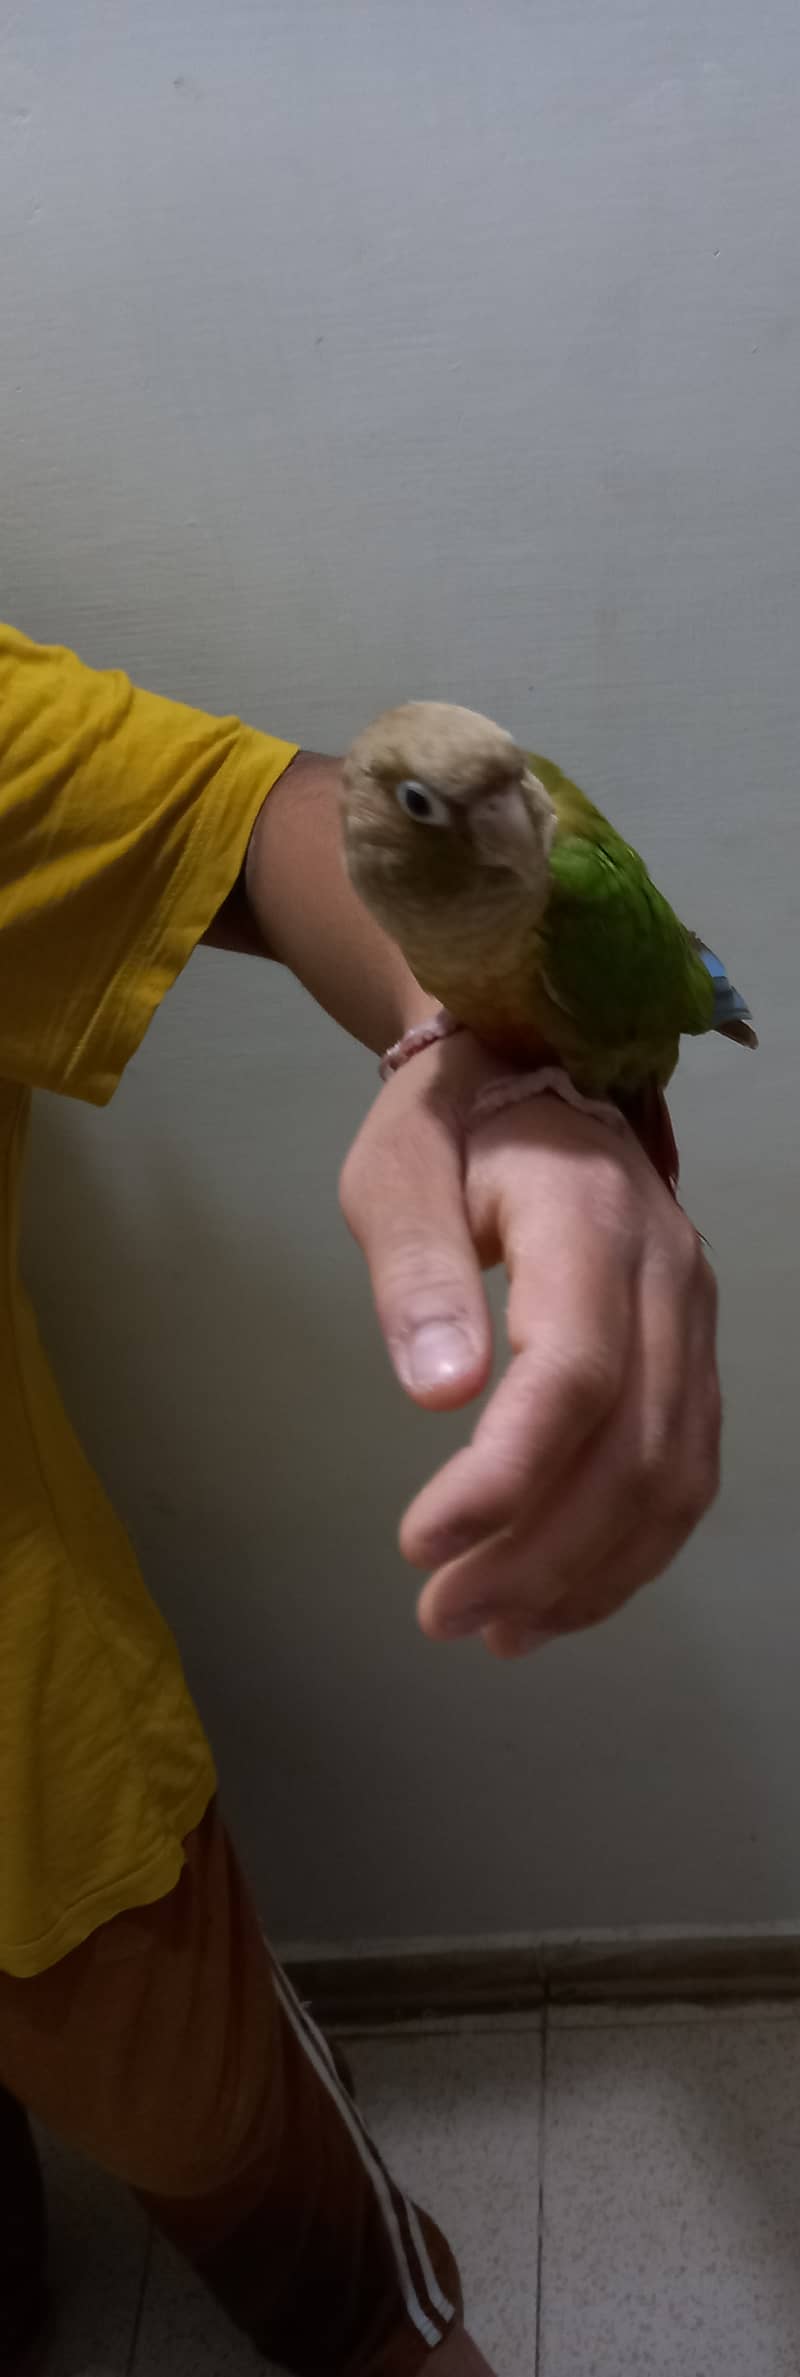 Hand tammed birds 2